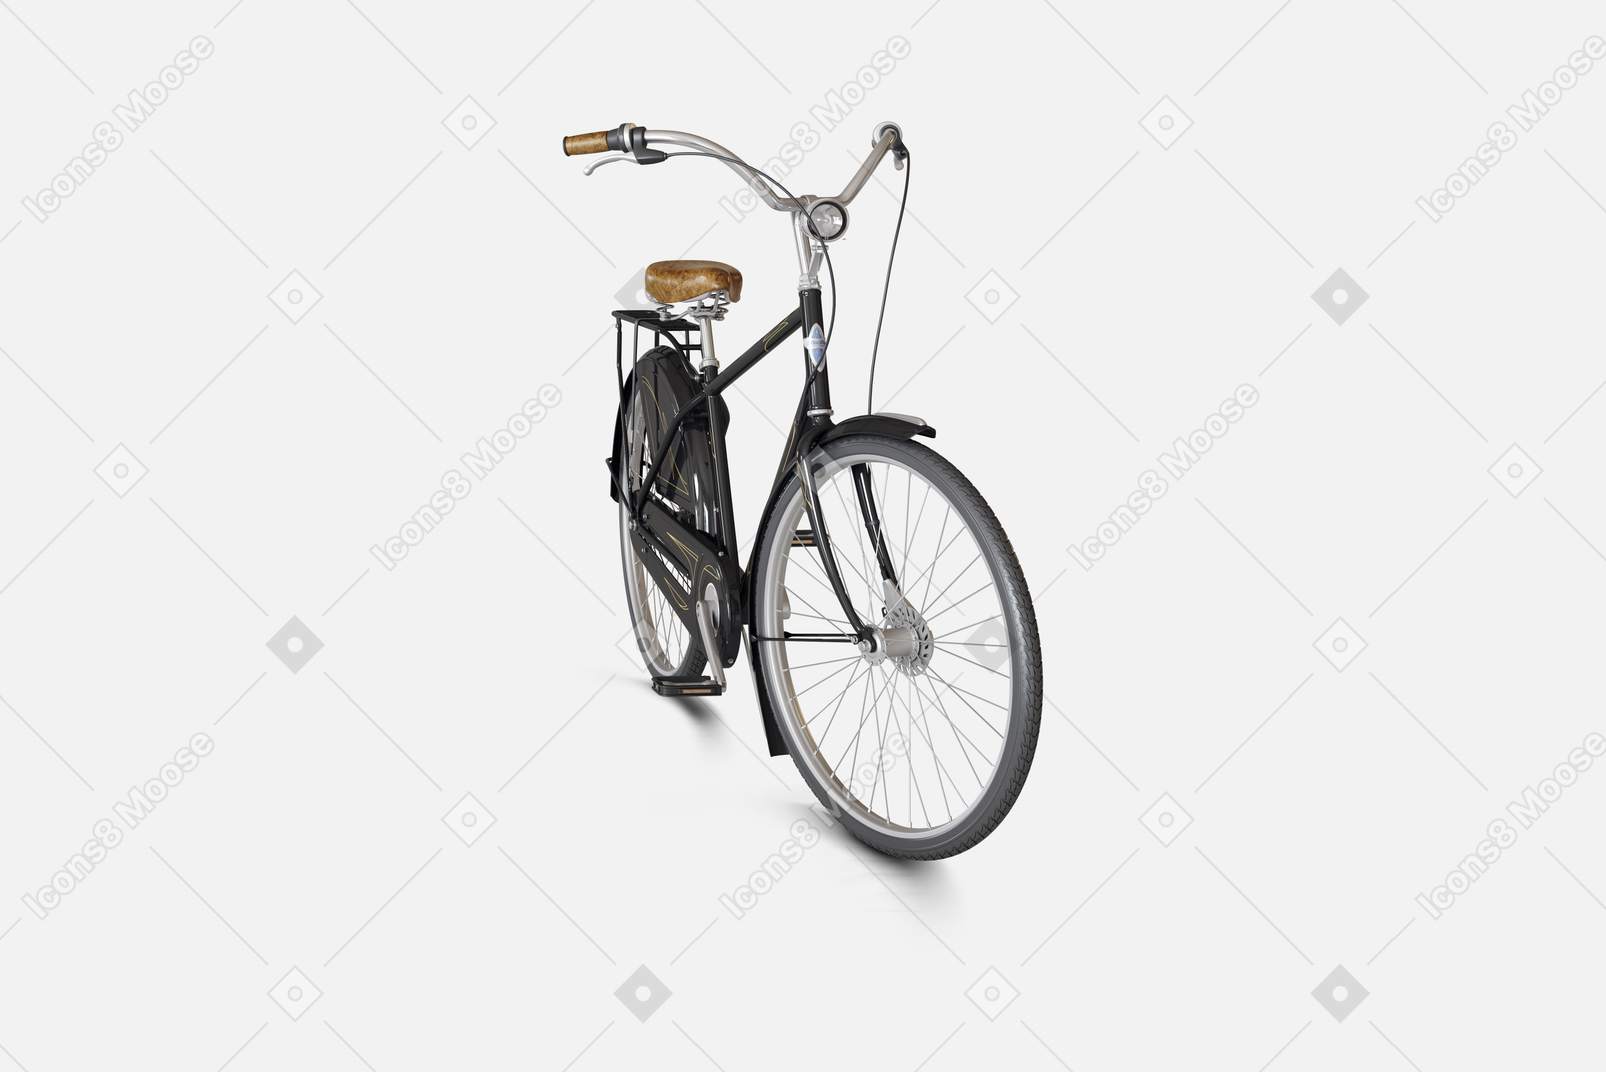 전면 및 후면 브레이크와 특수 프레임이 있는 검은색 도시 자전거